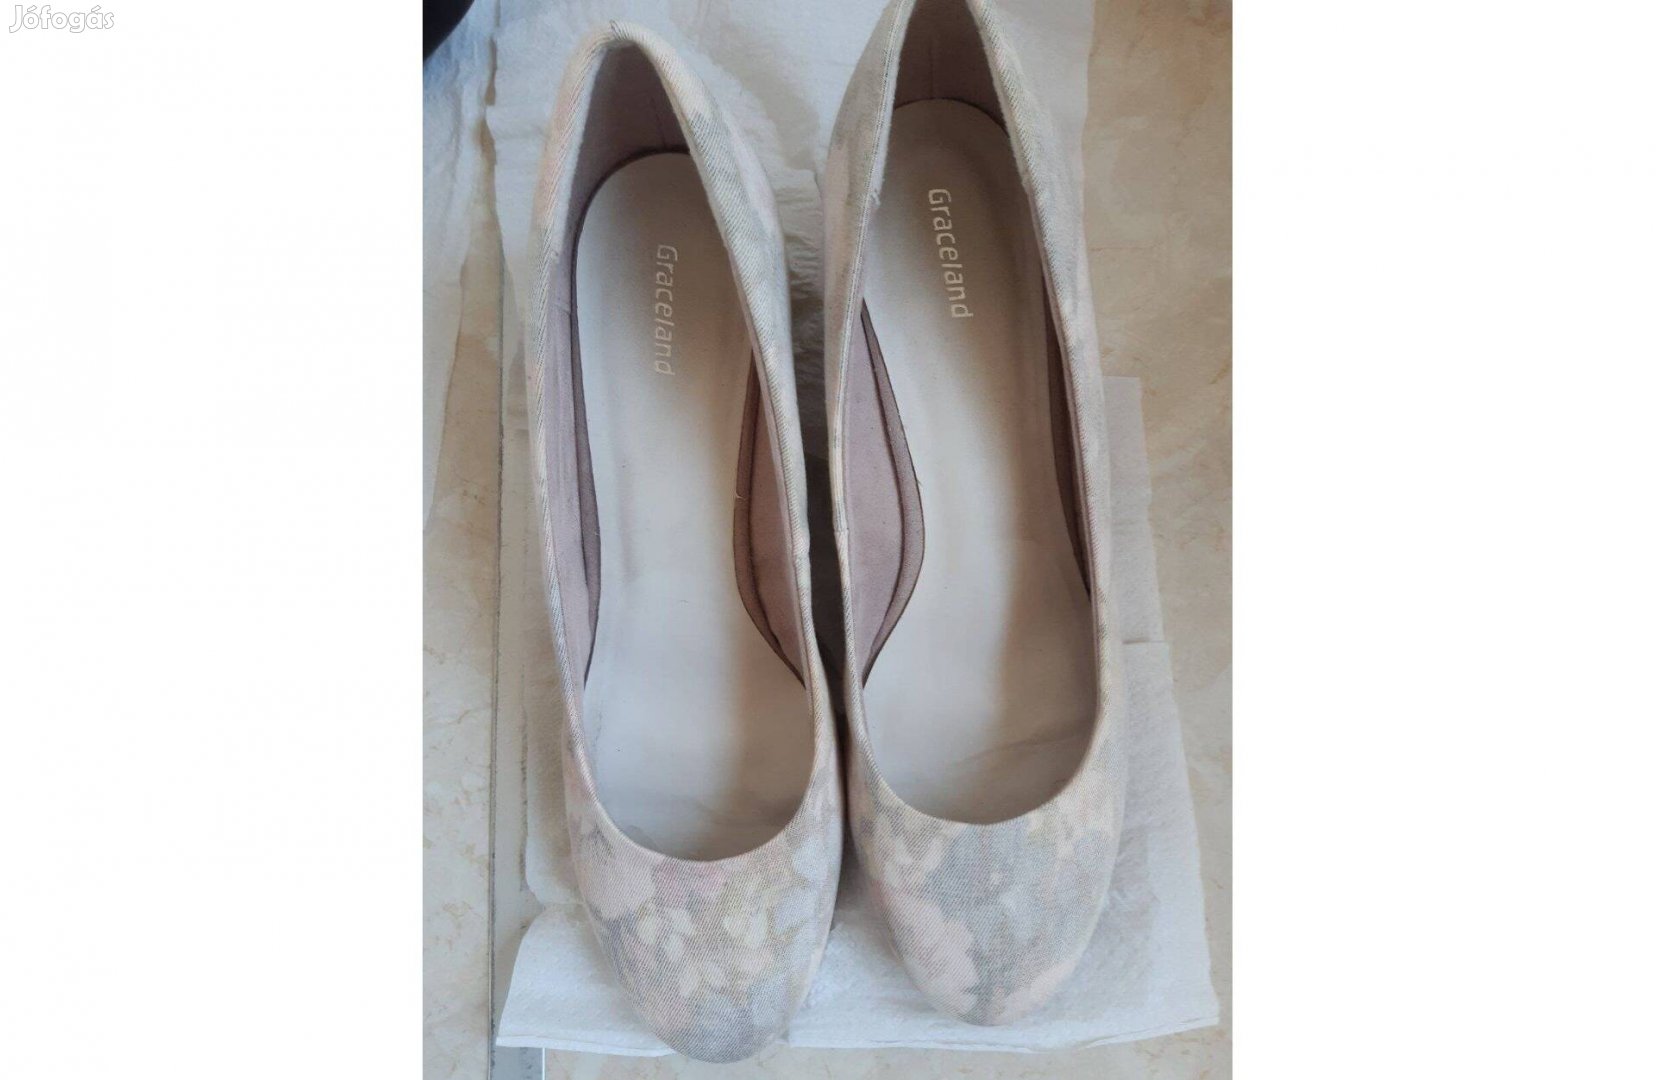 Eladó 39 Graceland női magassarkú cipő